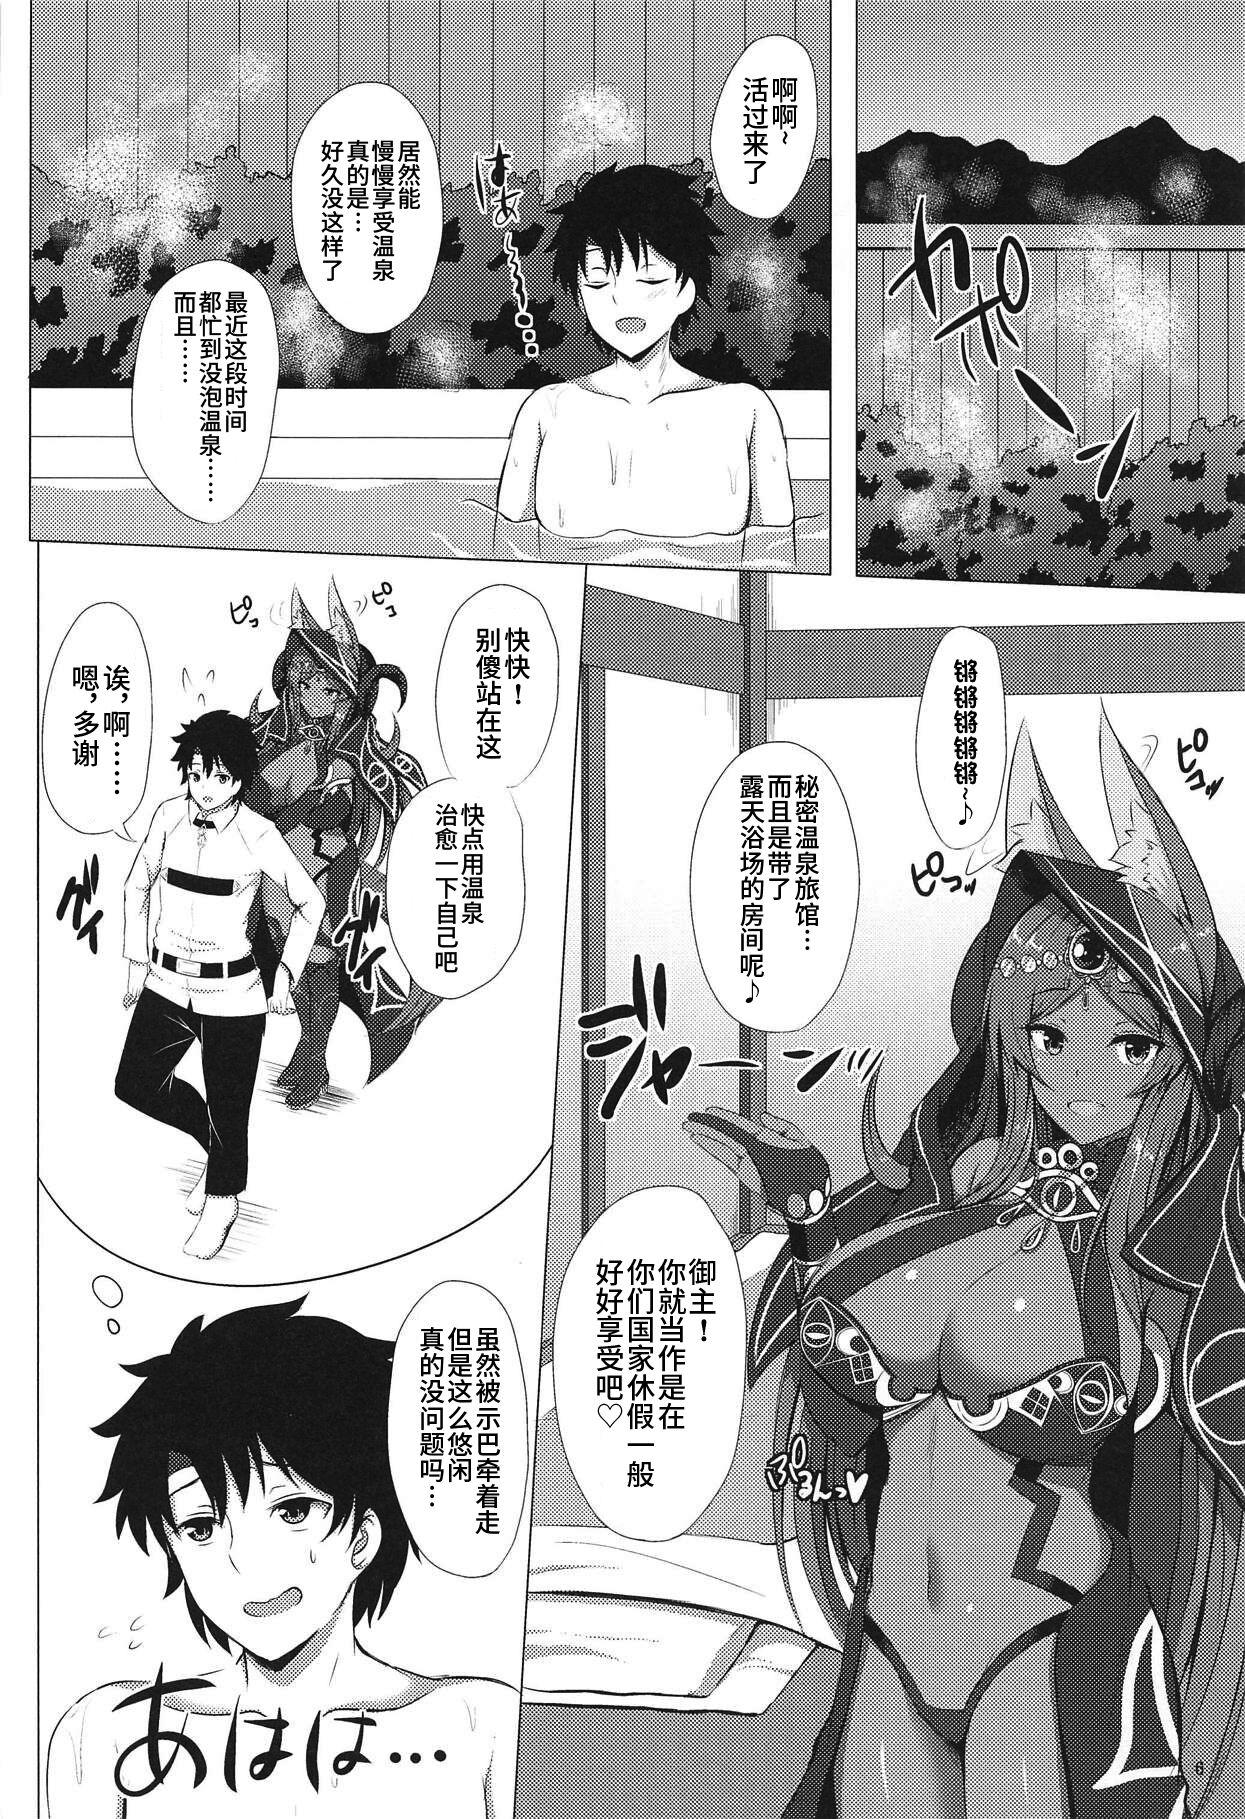 Old MidCas-san to Kashikiri Rotenburo - Fate grand order Family Sex - Page 5